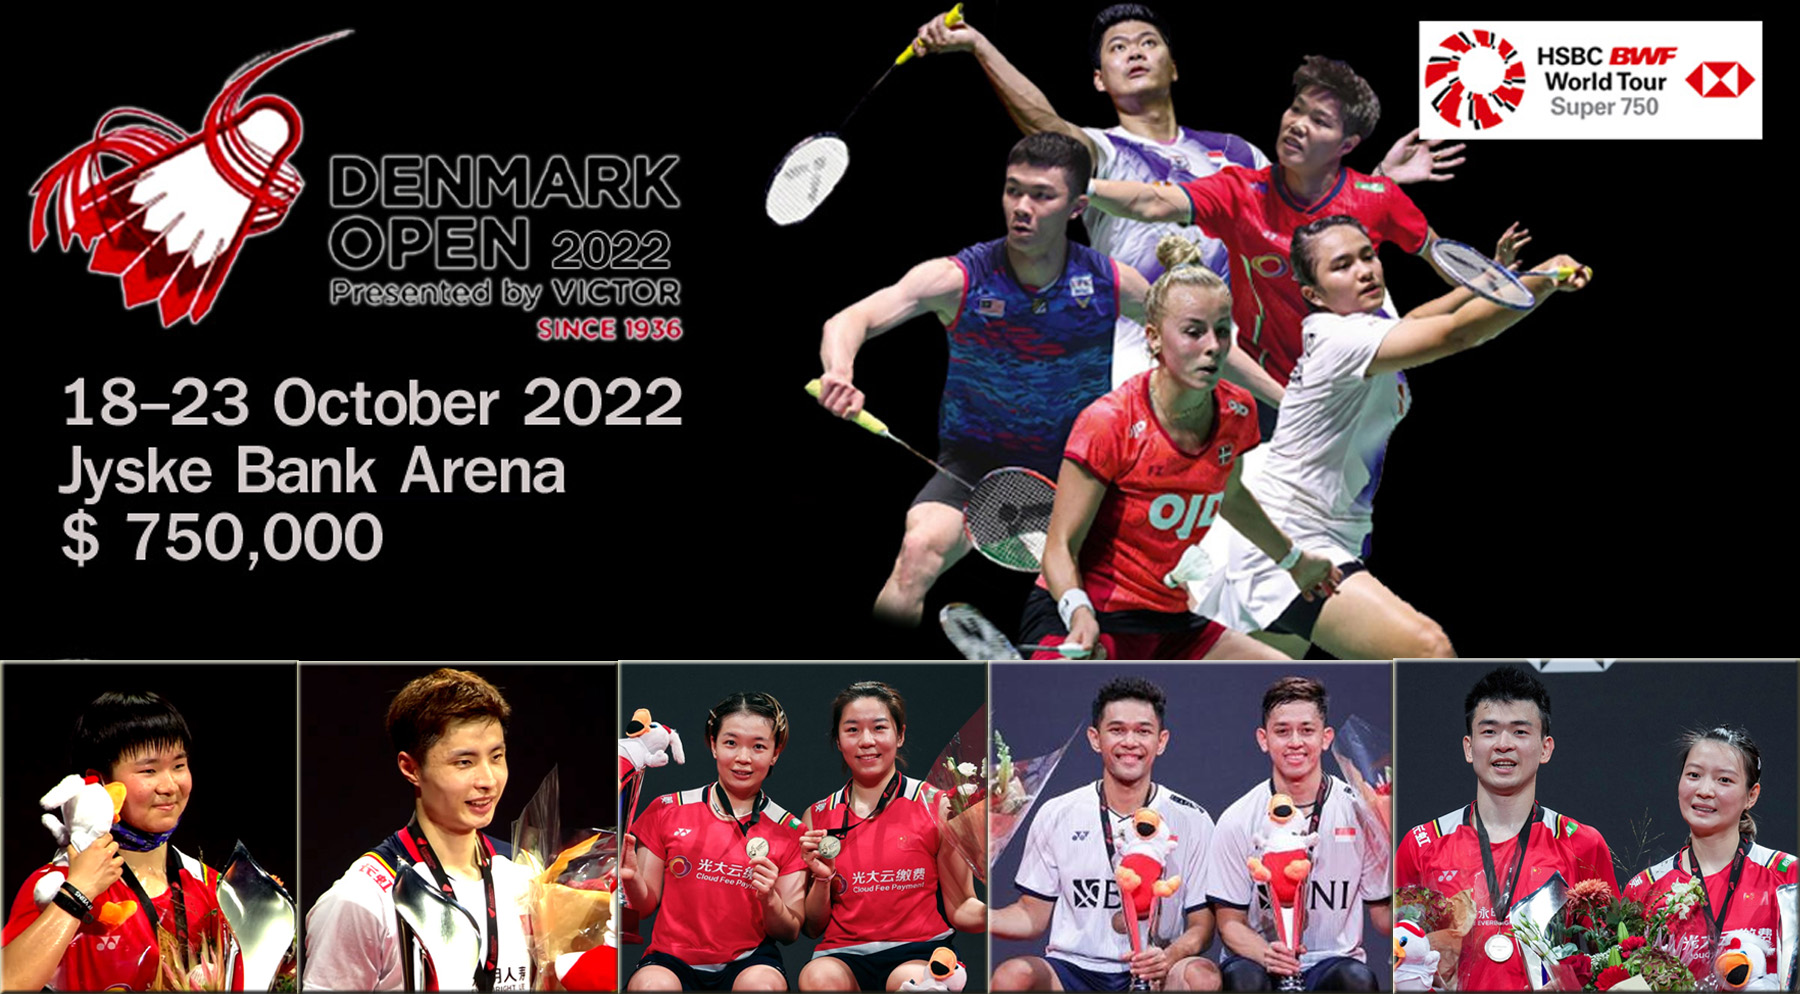 คลิปแบดมินตัน Denmark Open 2022 รอบ 32 - รอบชิงชนะเลิศ 18 - 23 ต.ค